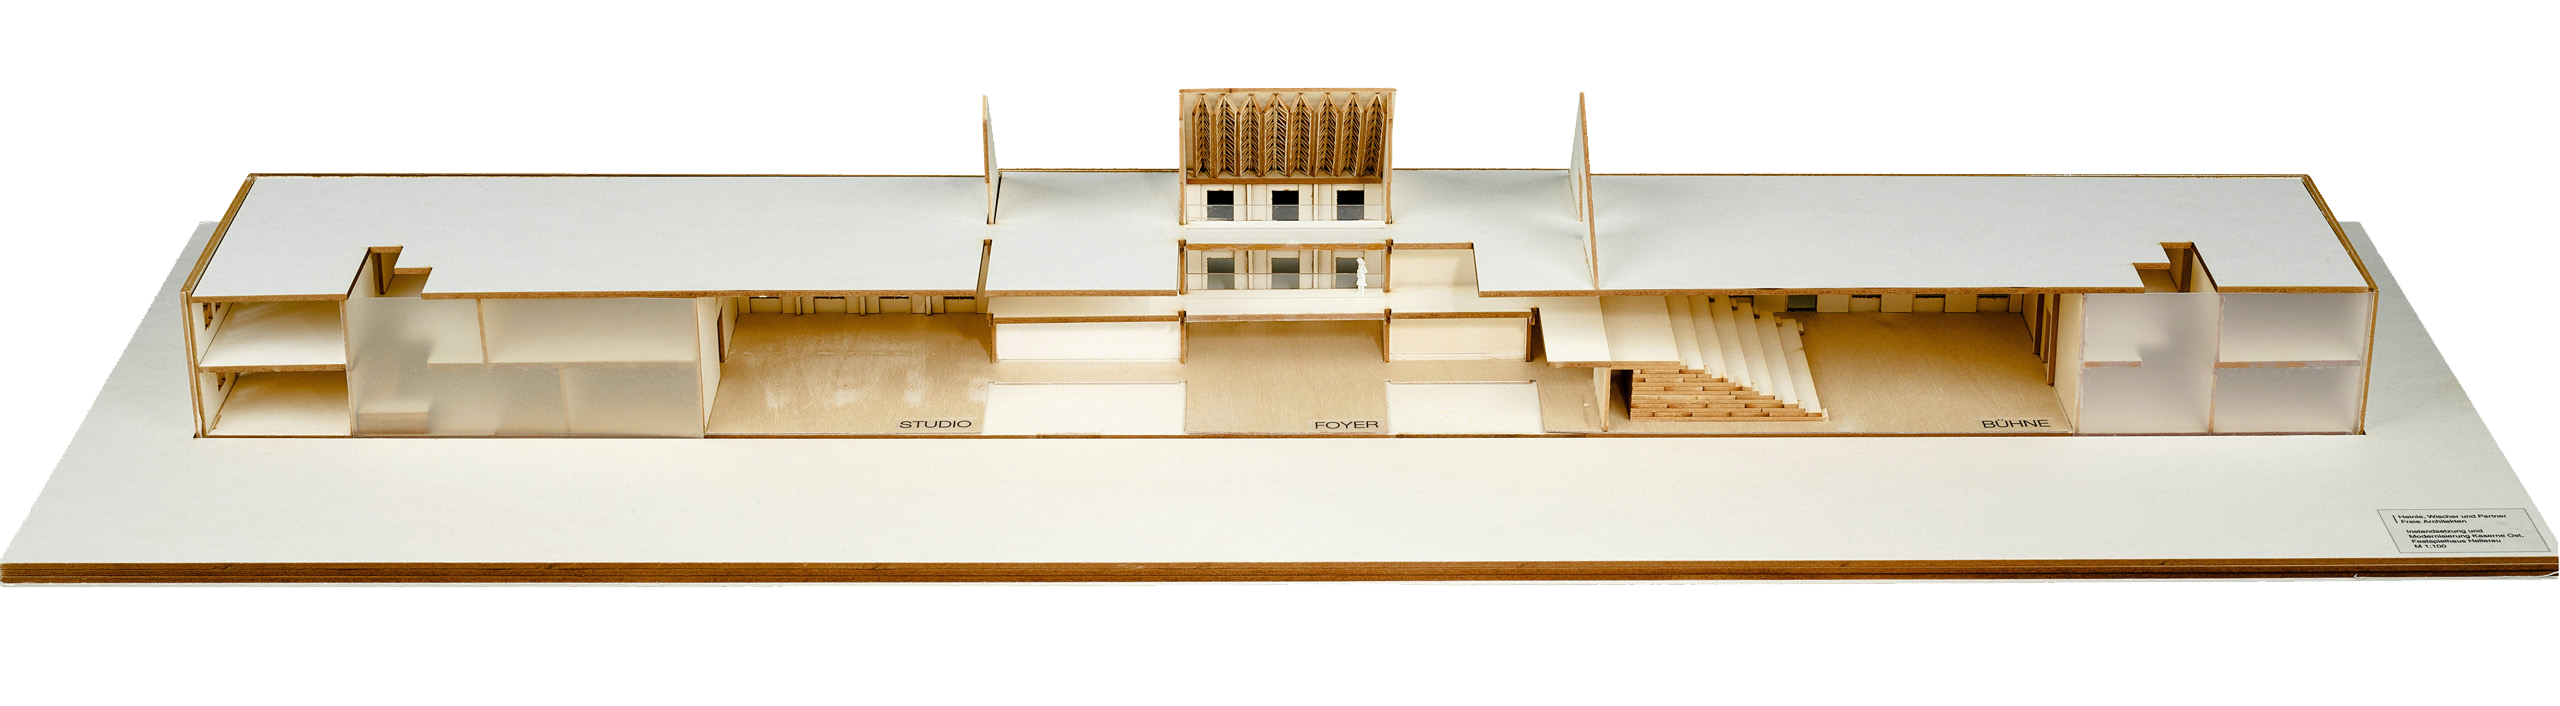 Modell mit geschlossener Fassade und geschlossenem Dach